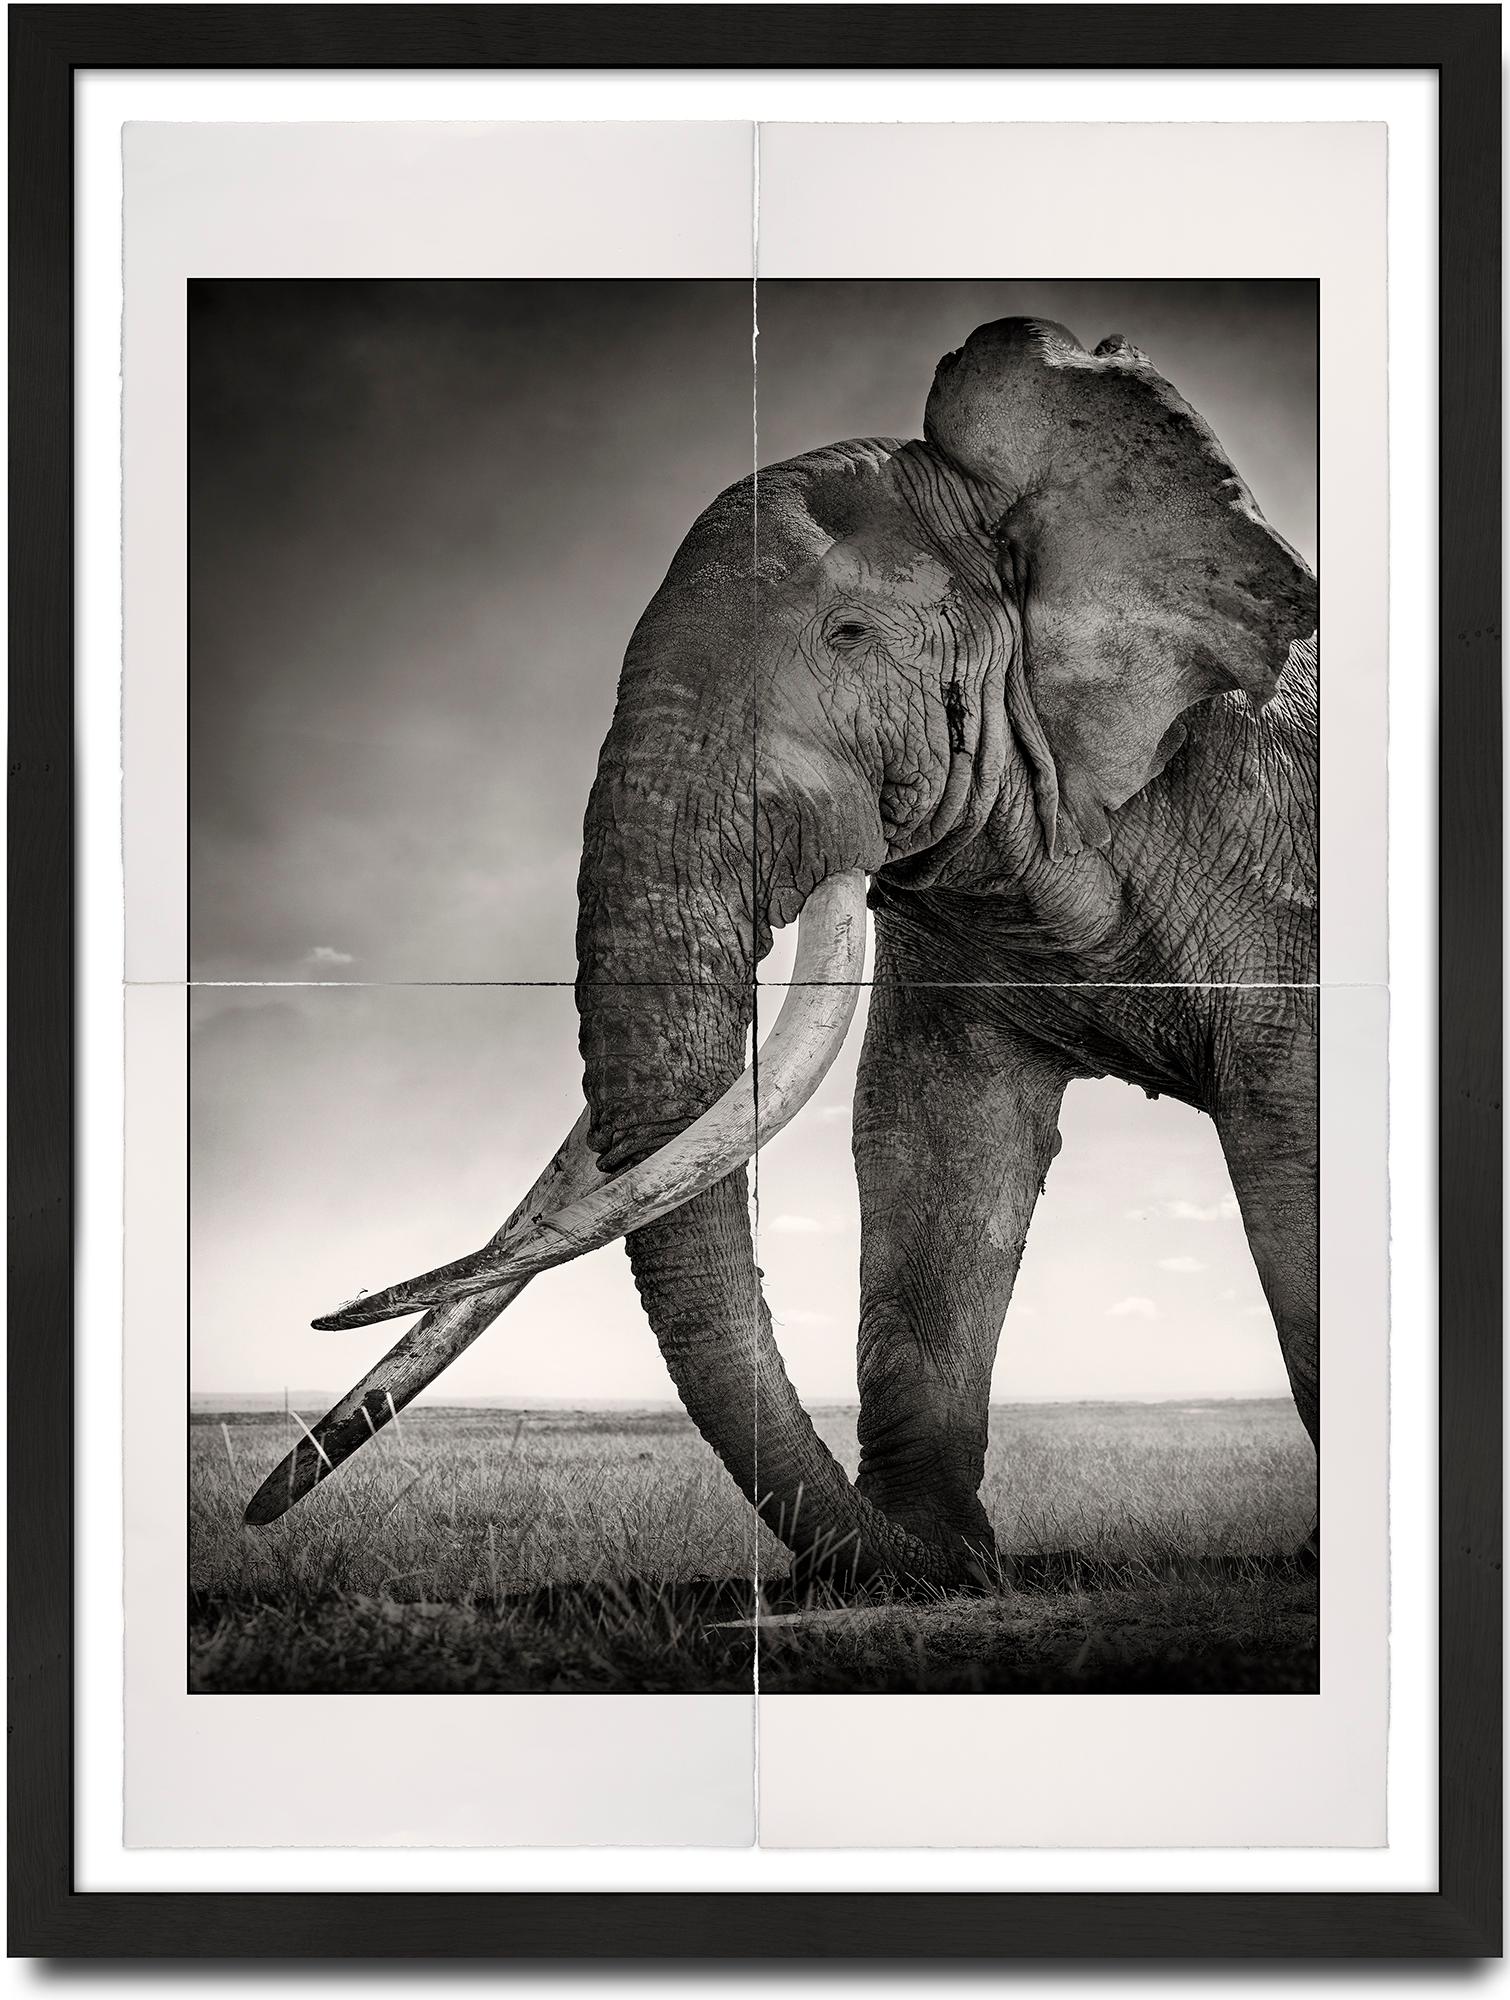 Joachim Schmeisser Portrait Photograph – Tim - Guardian of Eden, Platin, Tier, Elefant, Schwarz-Weiß-Fotografie